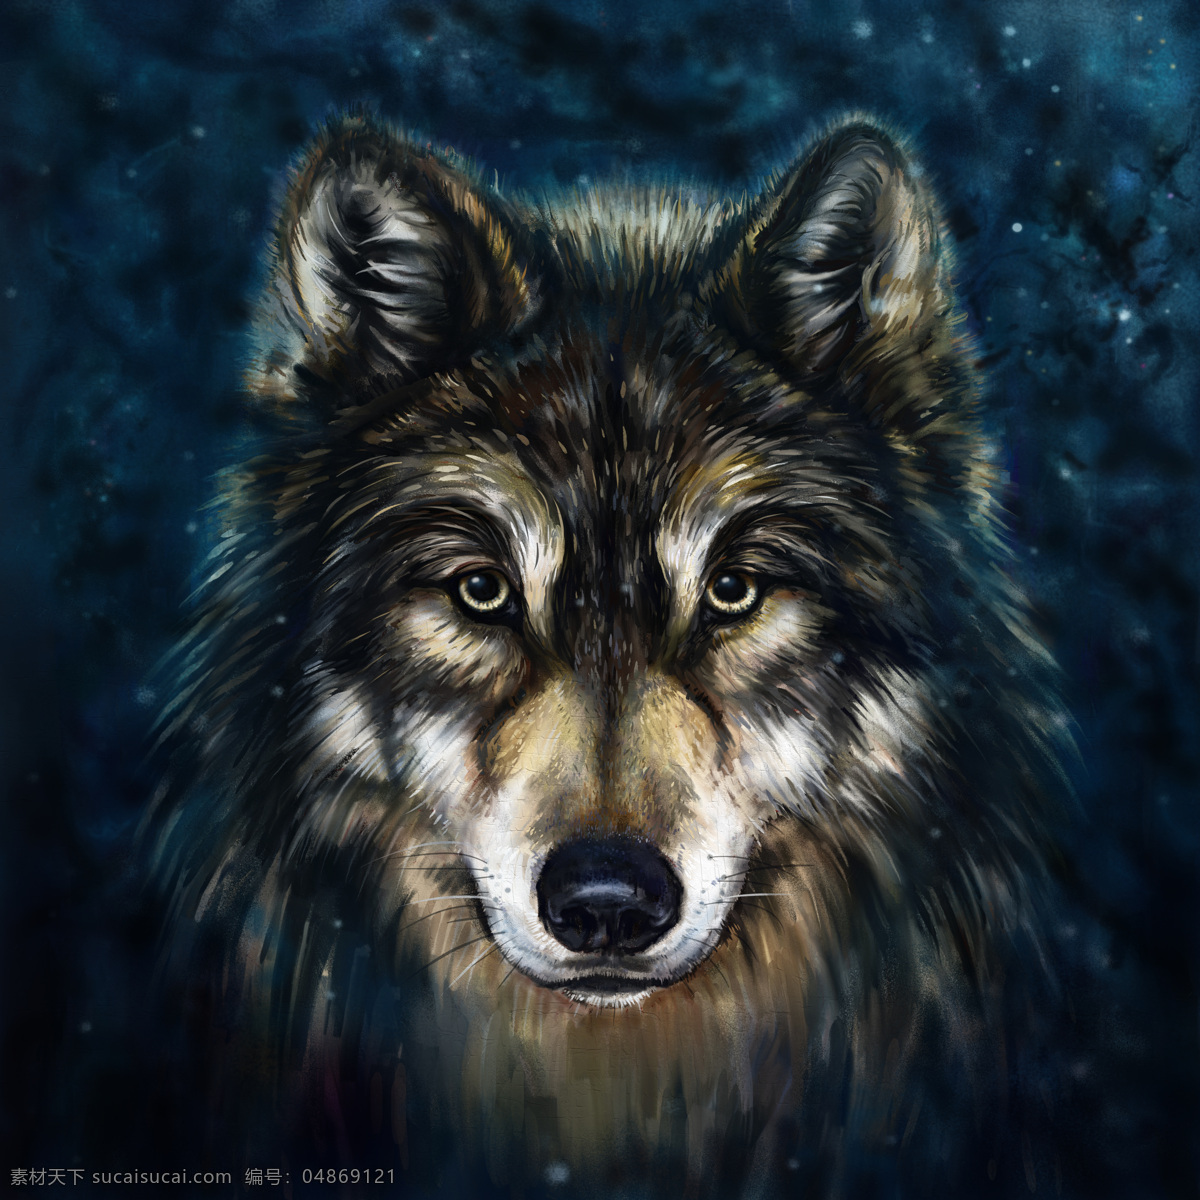 狼油画写生 狼 狼油画 狼插画 动物插画 矢量动物 动物油画 绘画艺术 陆地动物 生物世界 黑色